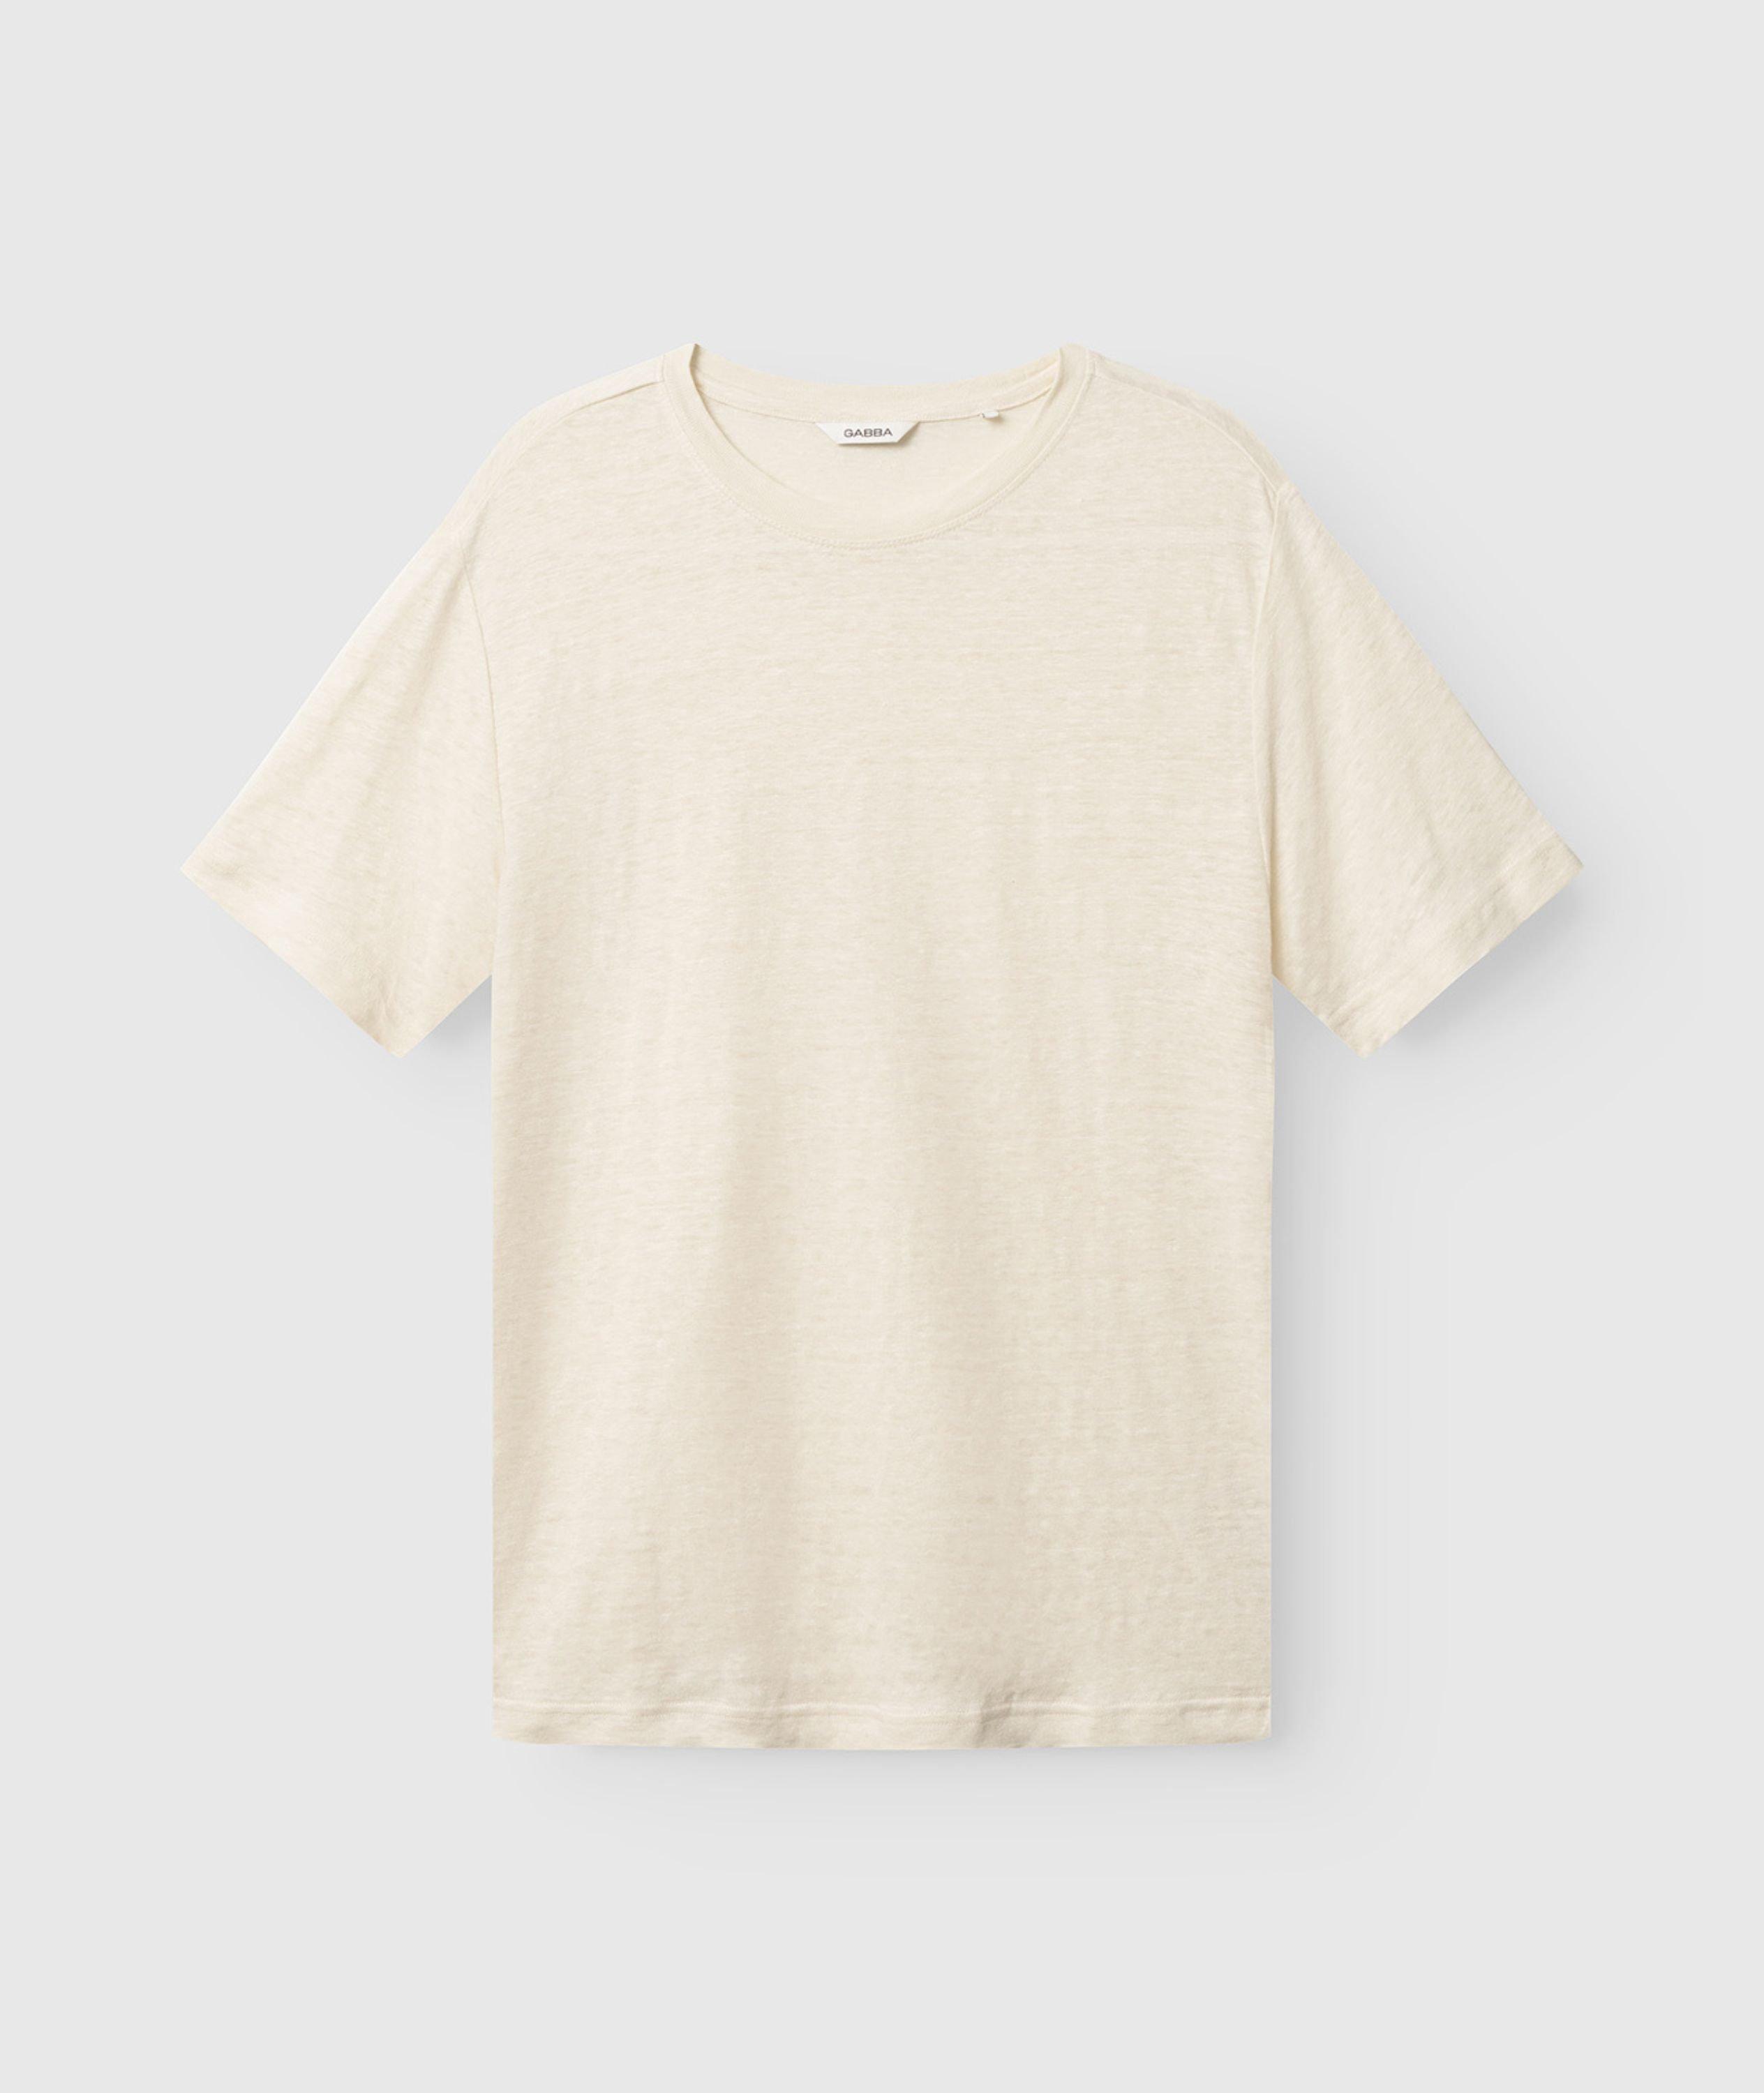 Duke Linen T-Shirt image 0